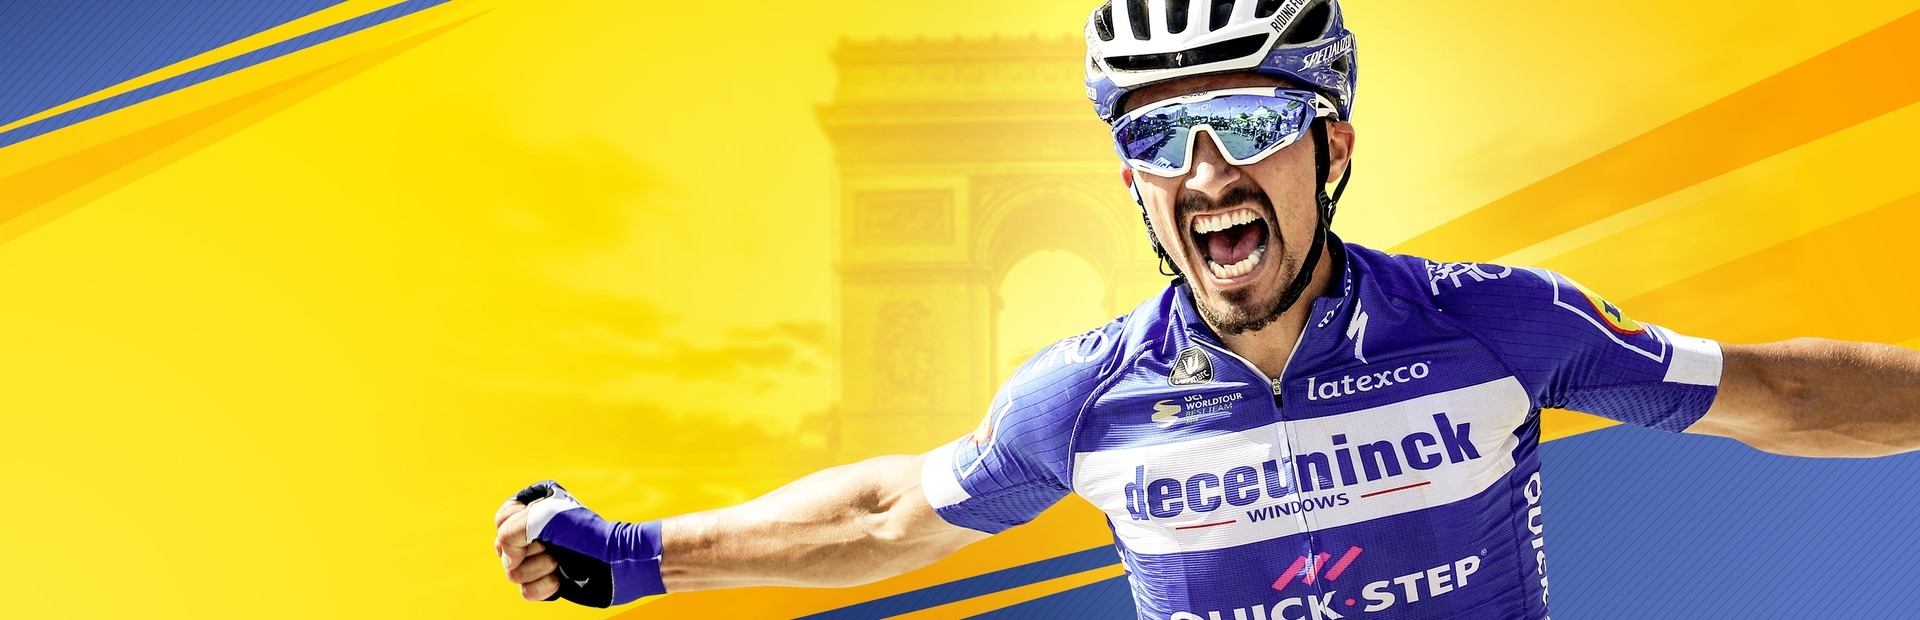 Banner Tour de France 2020